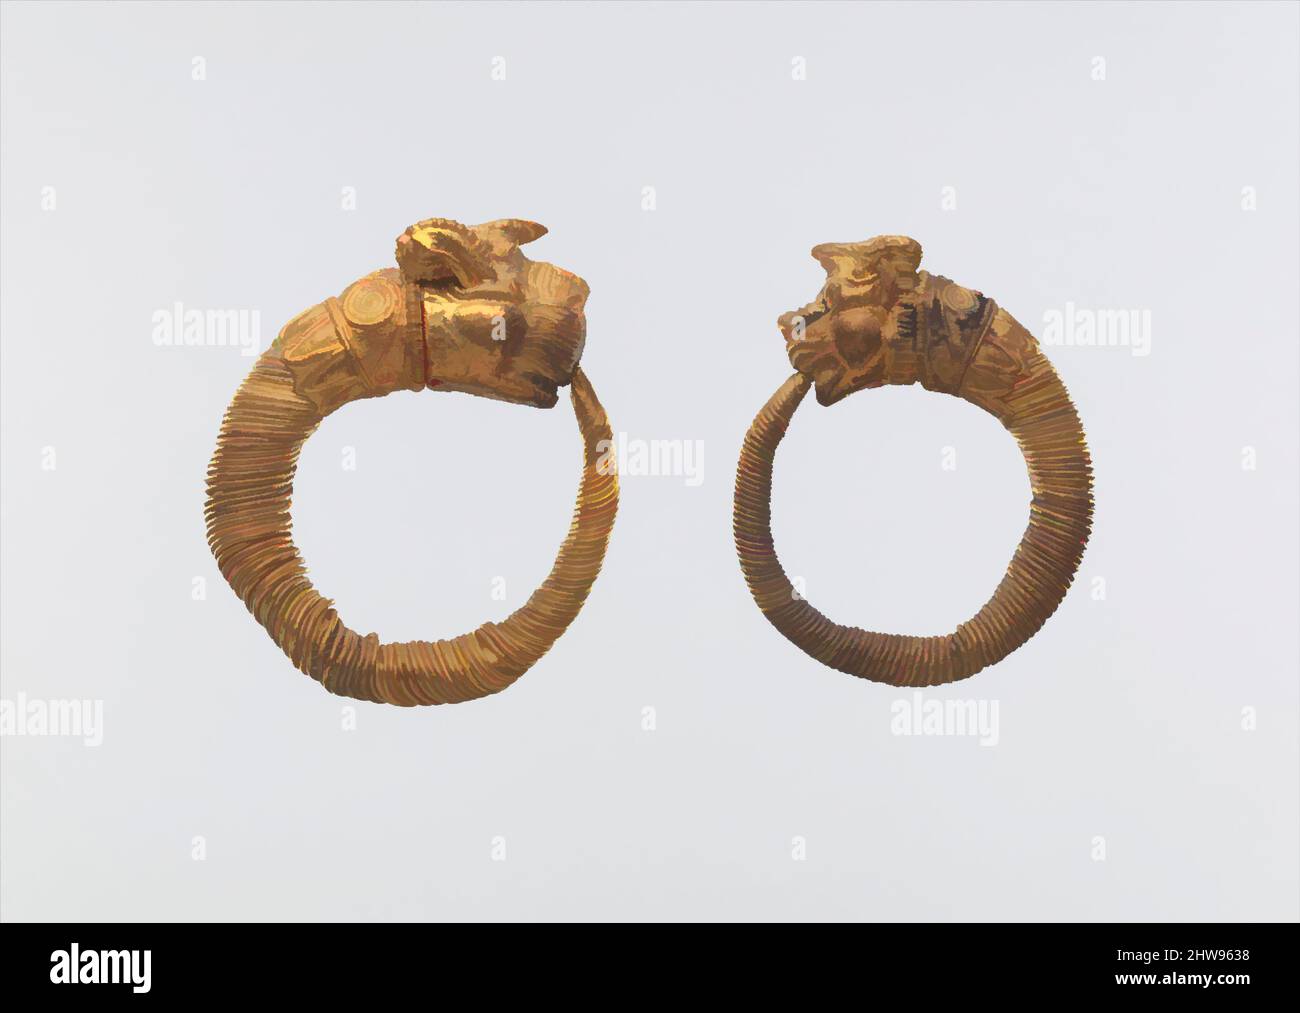 Arte ispirata da Earring con terminale di testa leone-griffin, periodo tolemaico, 4th–3rd secolo a.C., dall'Egitto, oro, Come indossato: H. 2,3 x W. 2,2 cm (7/8 x 7/8 in.), gli anelli di sostegno formati da filo avvolto con terminali per la testa animale sono il tipo più comune di orecchini ellenistici. il griffin è un mitico, opere classiche modernizzate da Artotop con un tuffo di modernità. Forme, colore e valore, impatto visivo accattivante sulle emozioni artistiche attraverso la libertà delle opere d'arte in modo contemporaneo. Un messaggio senza tempo che persegue una nuova direzione selvaggiamente creativa. Artisti che si rivolgono al supporto digitale e creano l'NFT Artotop Foto Stock